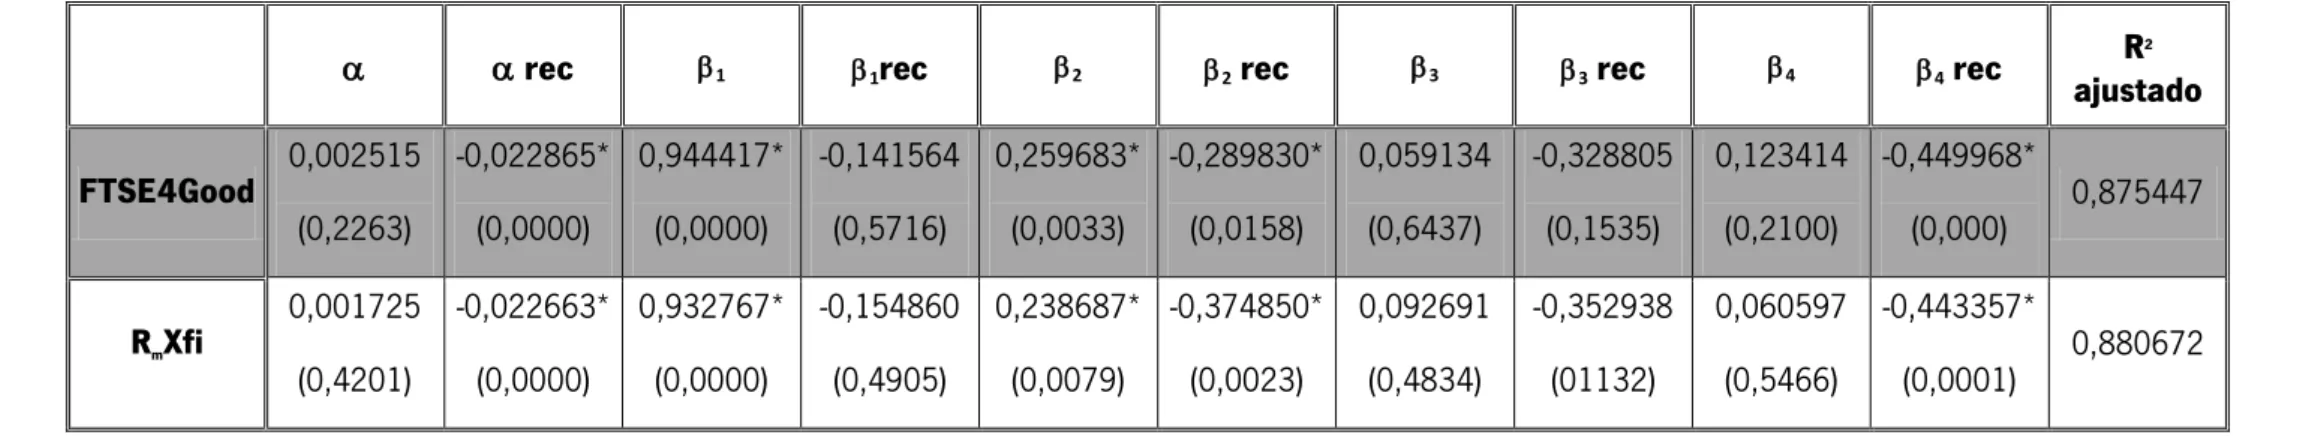 Tabela 6 – Estimativas de desempenho baseadas no modelo de quatro fatores de Carhart com uma variável dummy de acordo com  os períodos de expansão e recessão para o período de 2005 e 2010 